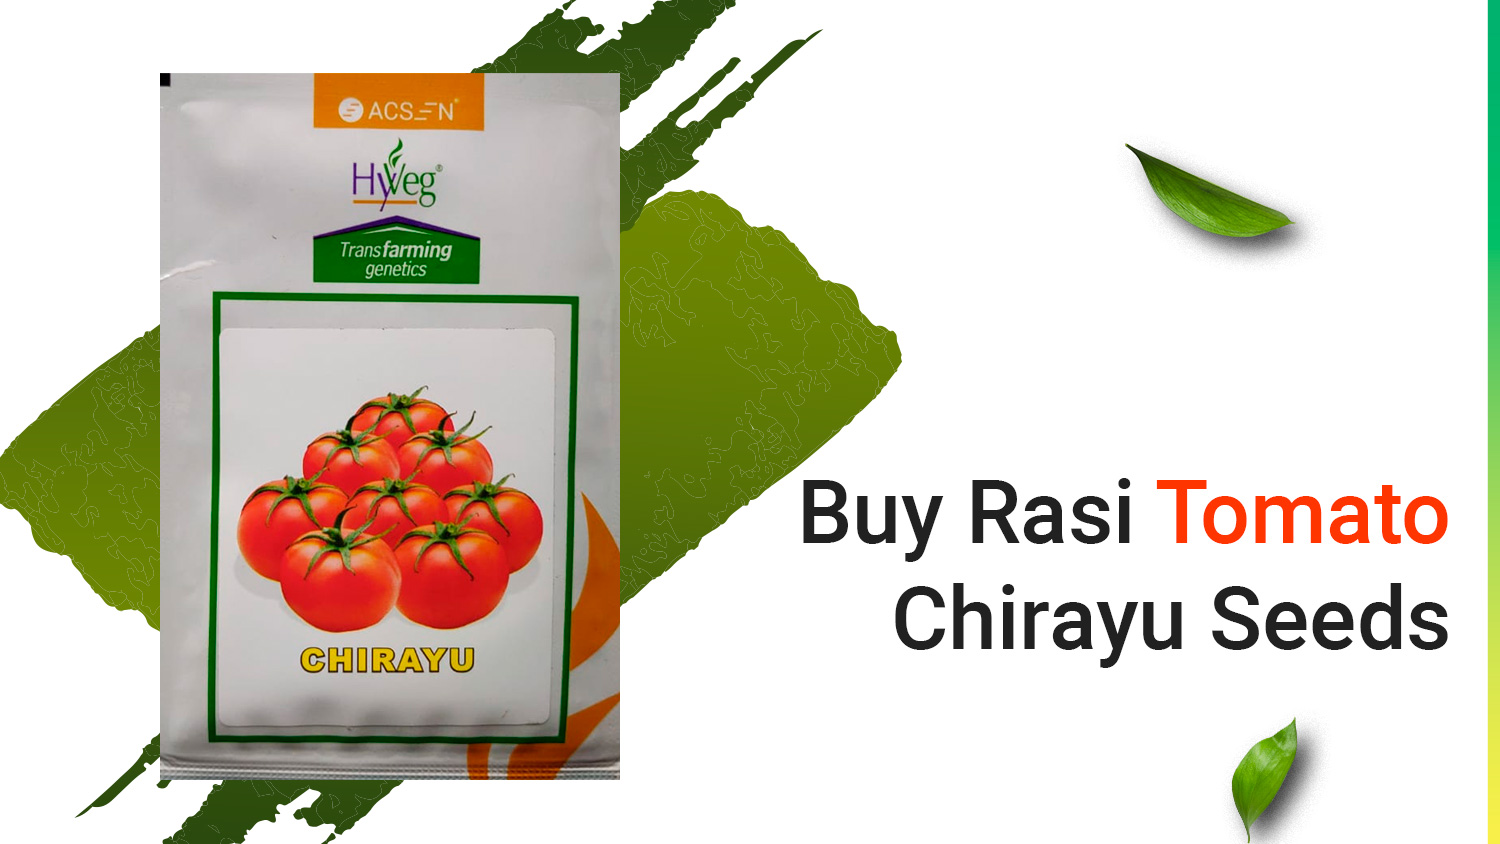 Buy Rasi Tomato
Chirayu Seeds

v